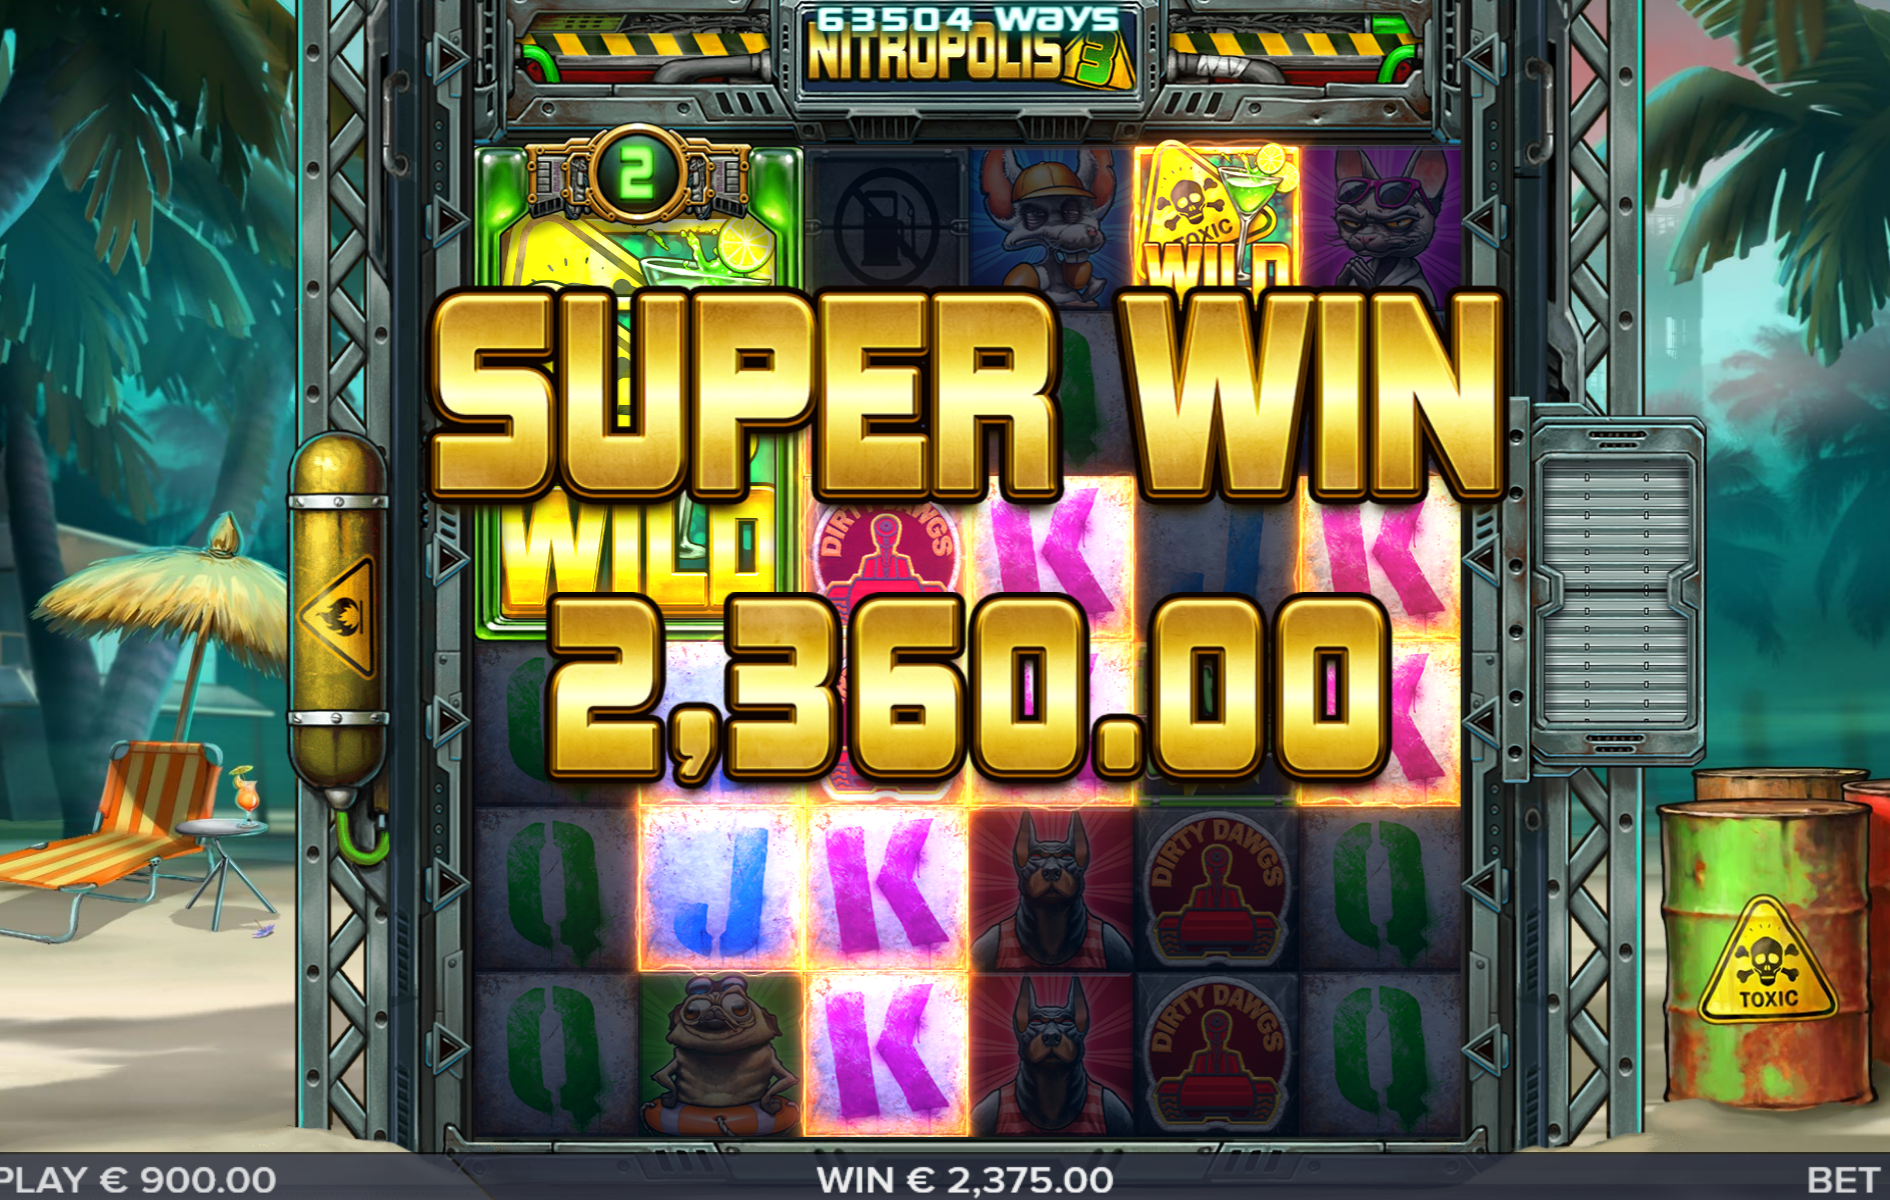 Nitropolis 3 Slot Big Win